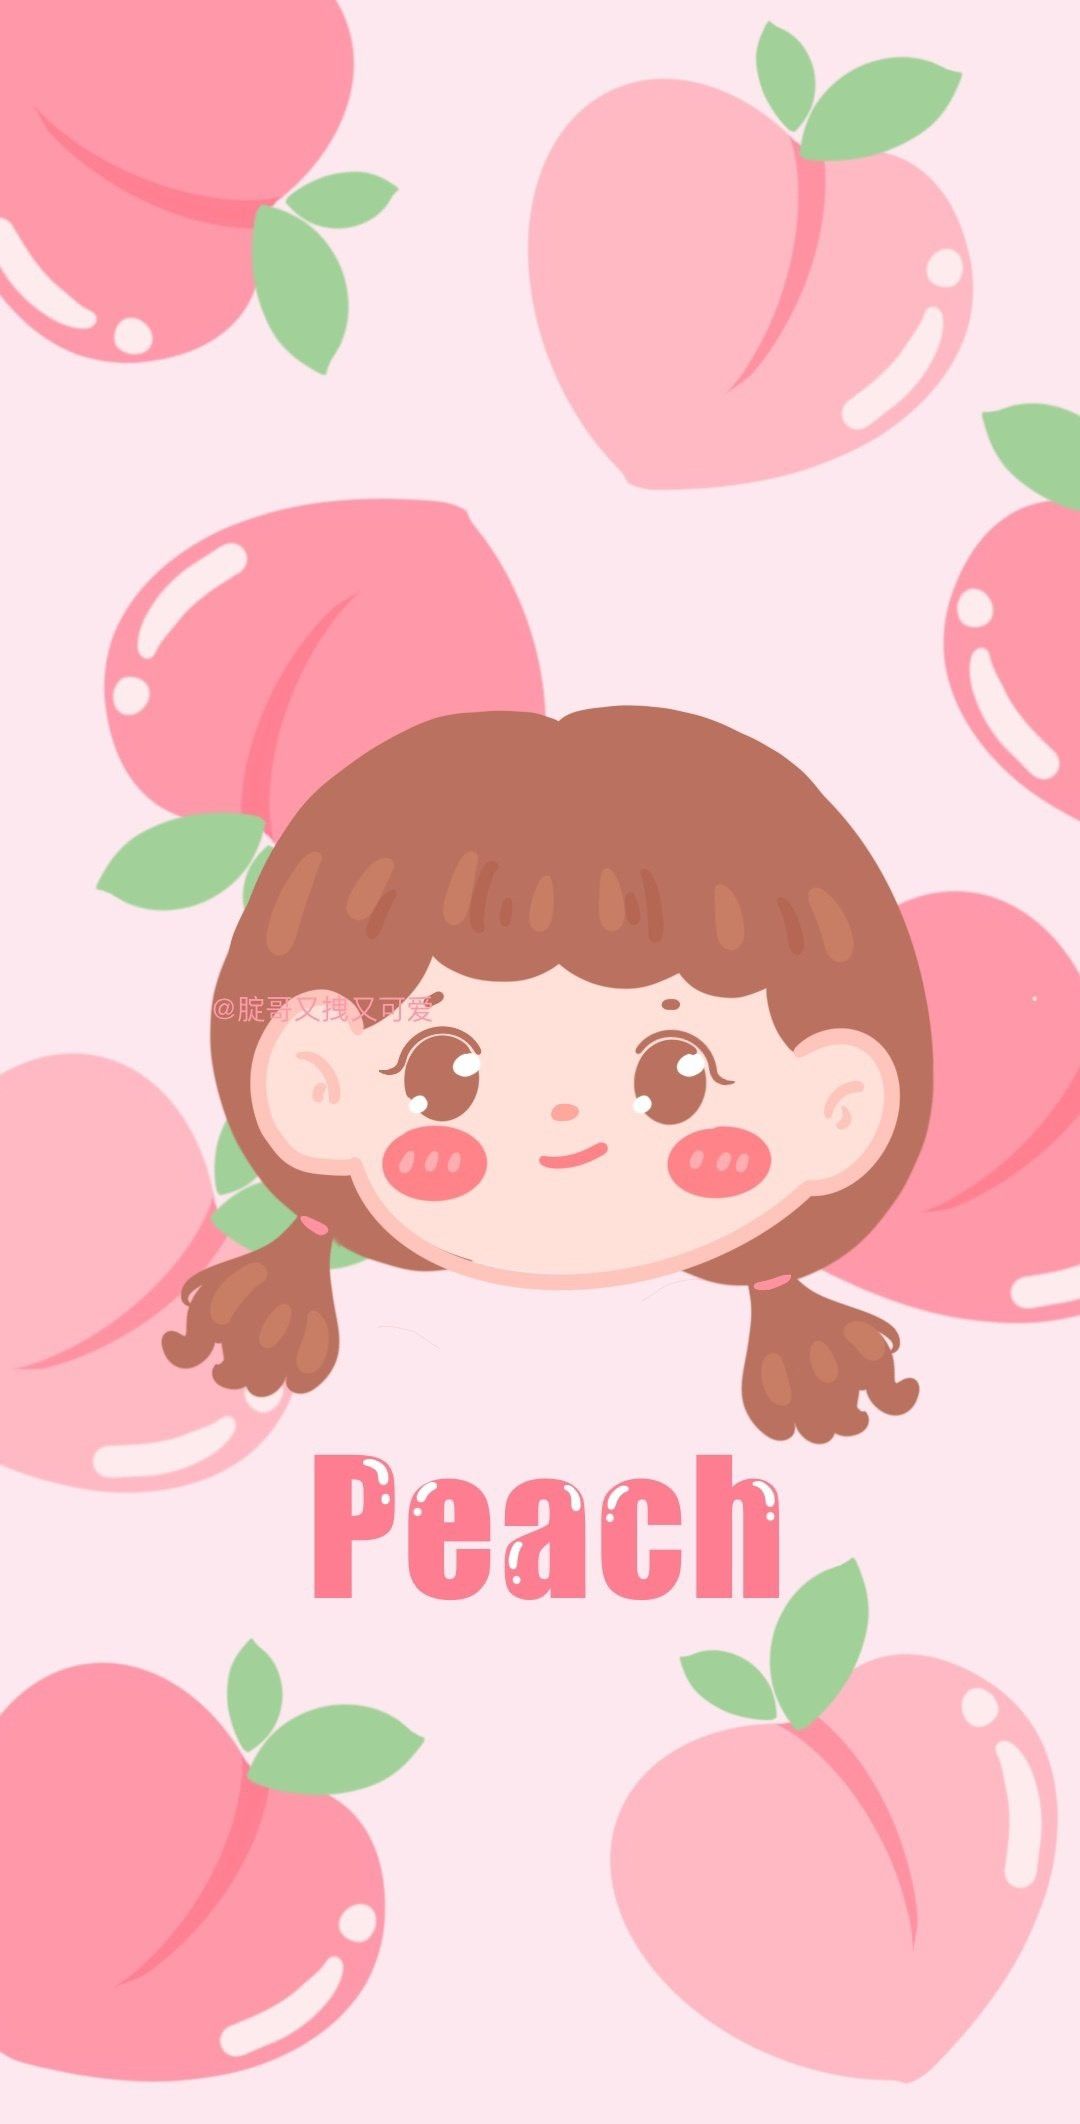 Tổng phù hợp với rộng lớn 102 peach hình nền ngược khoan dễ thương tuyệt hảo nhất   thdonghoadianeduvn